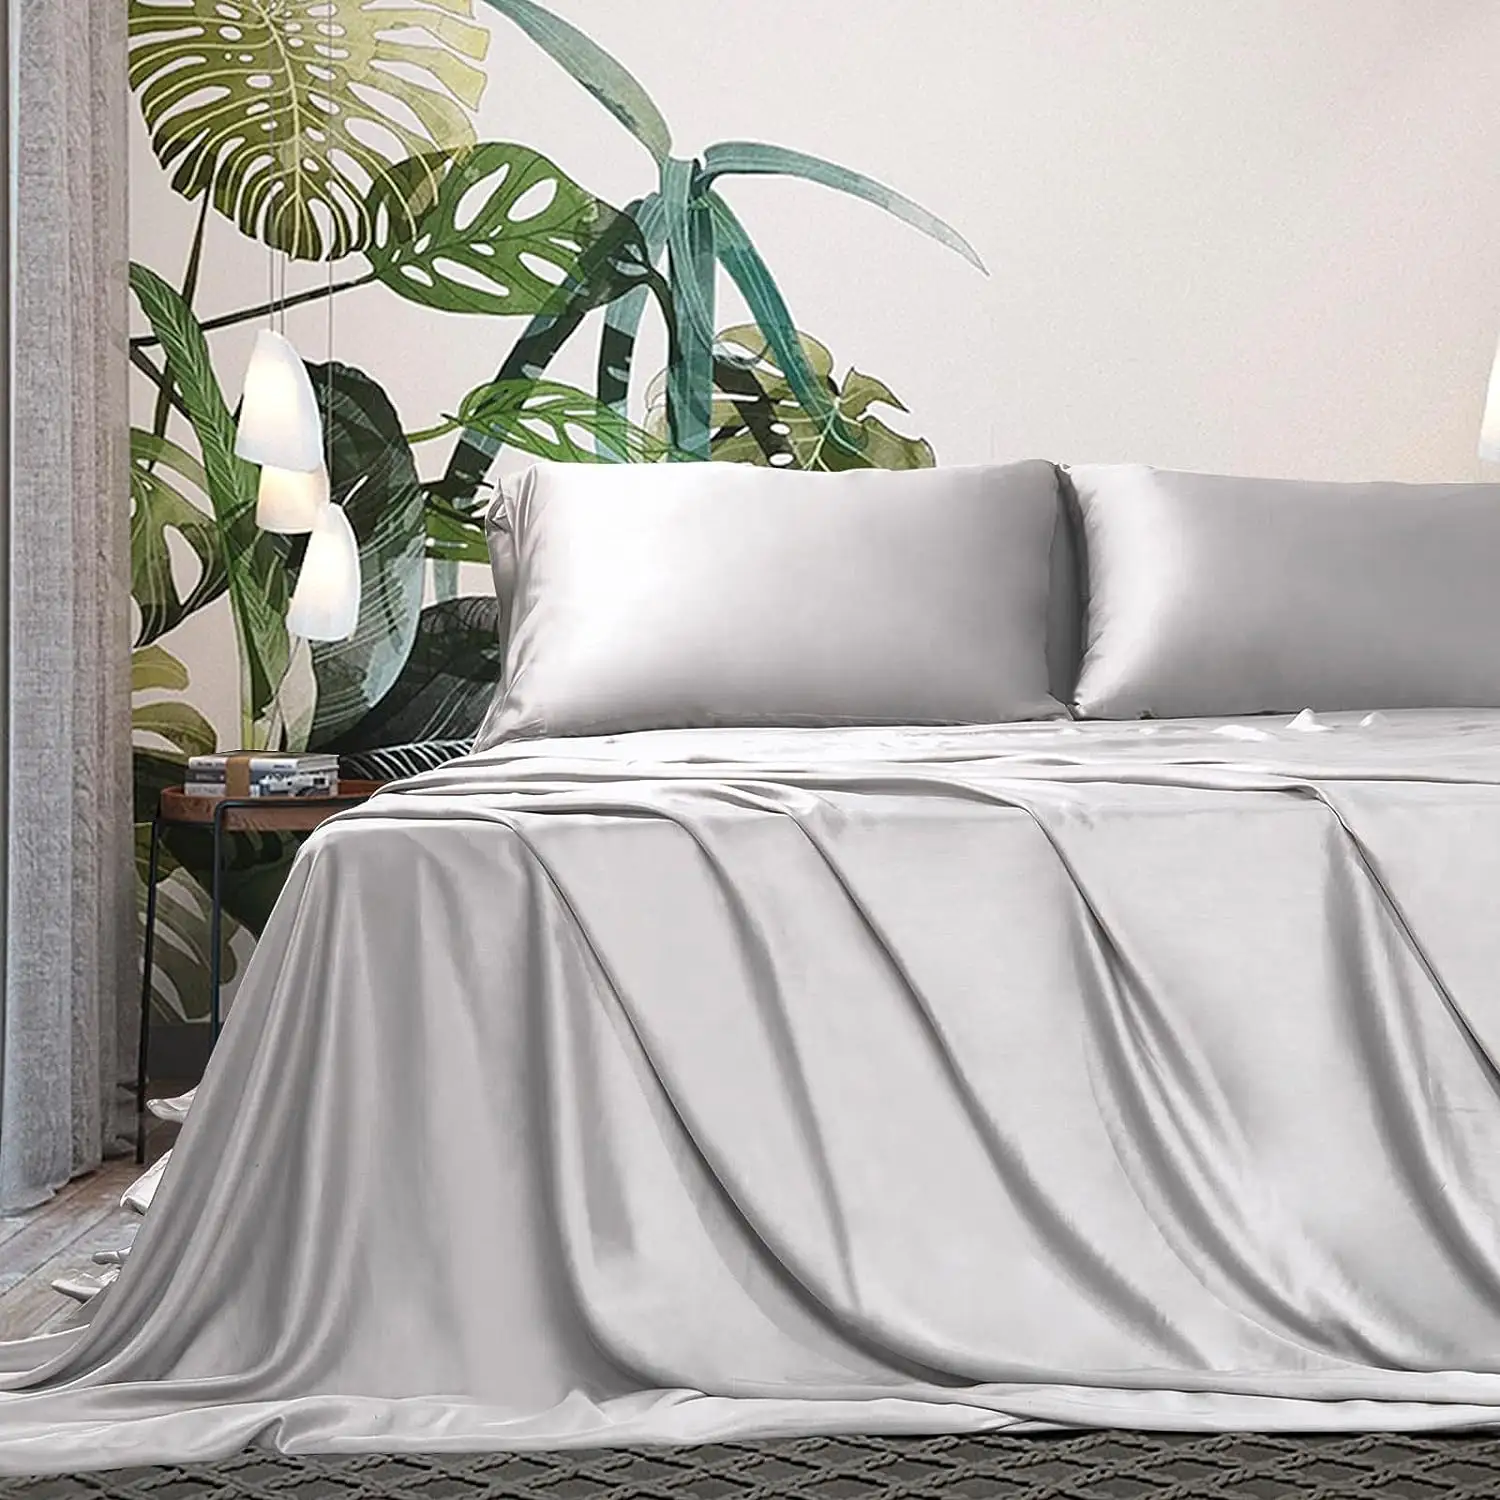 Drap de lit de luxe pur Tencel 100% drap de lit King Size ensemble de literie draps en Lyocell linge de lit poches profondes